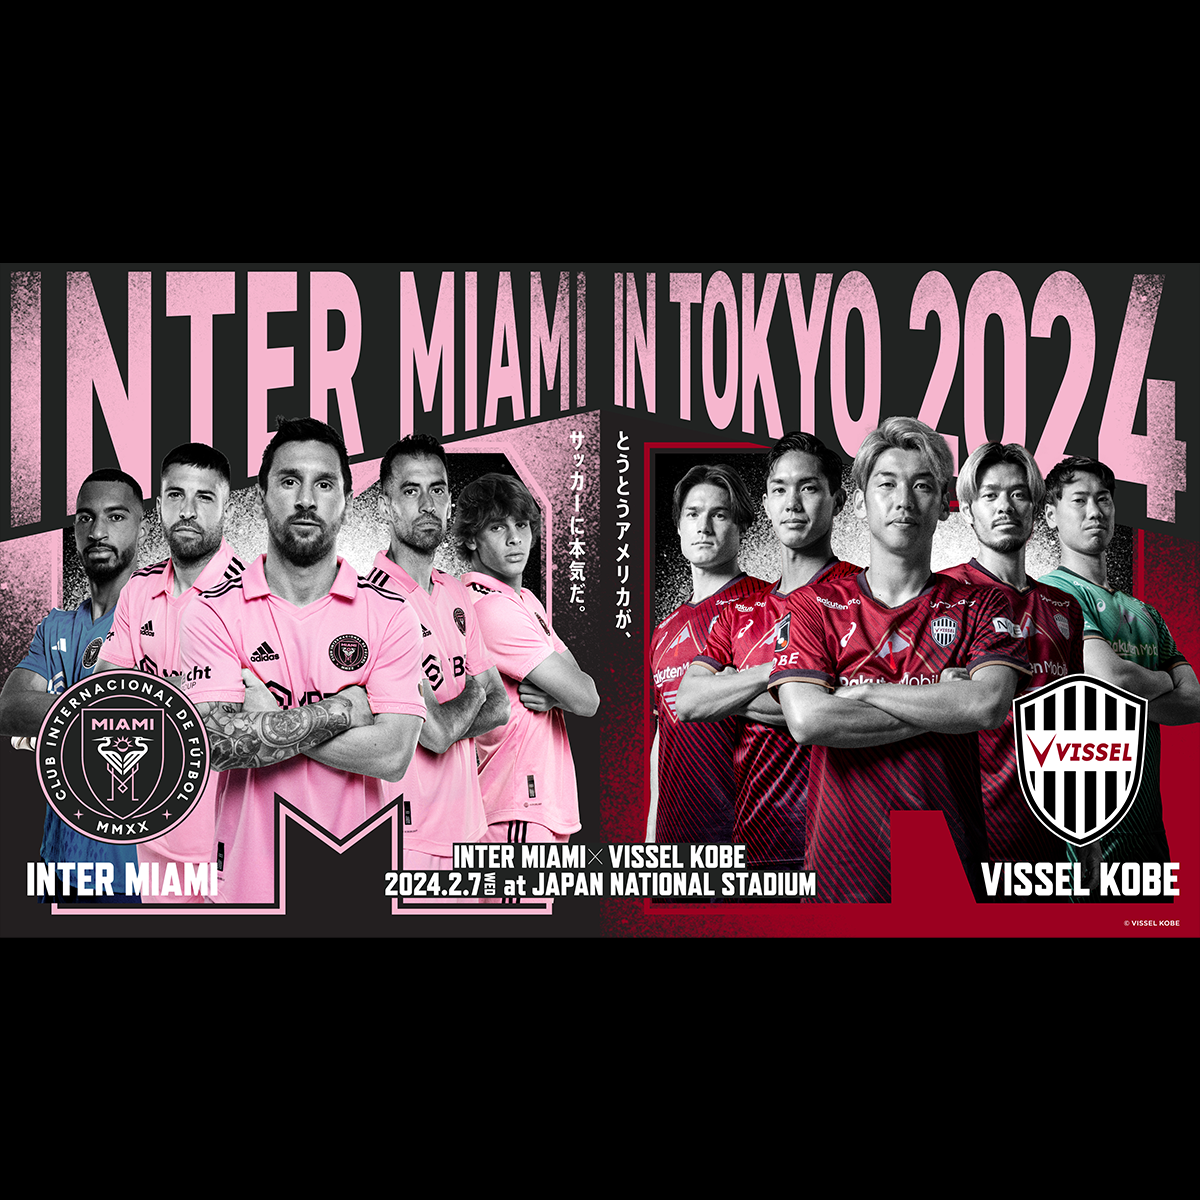 『INTER MIAMI IN TOKYO 2024』に協賛